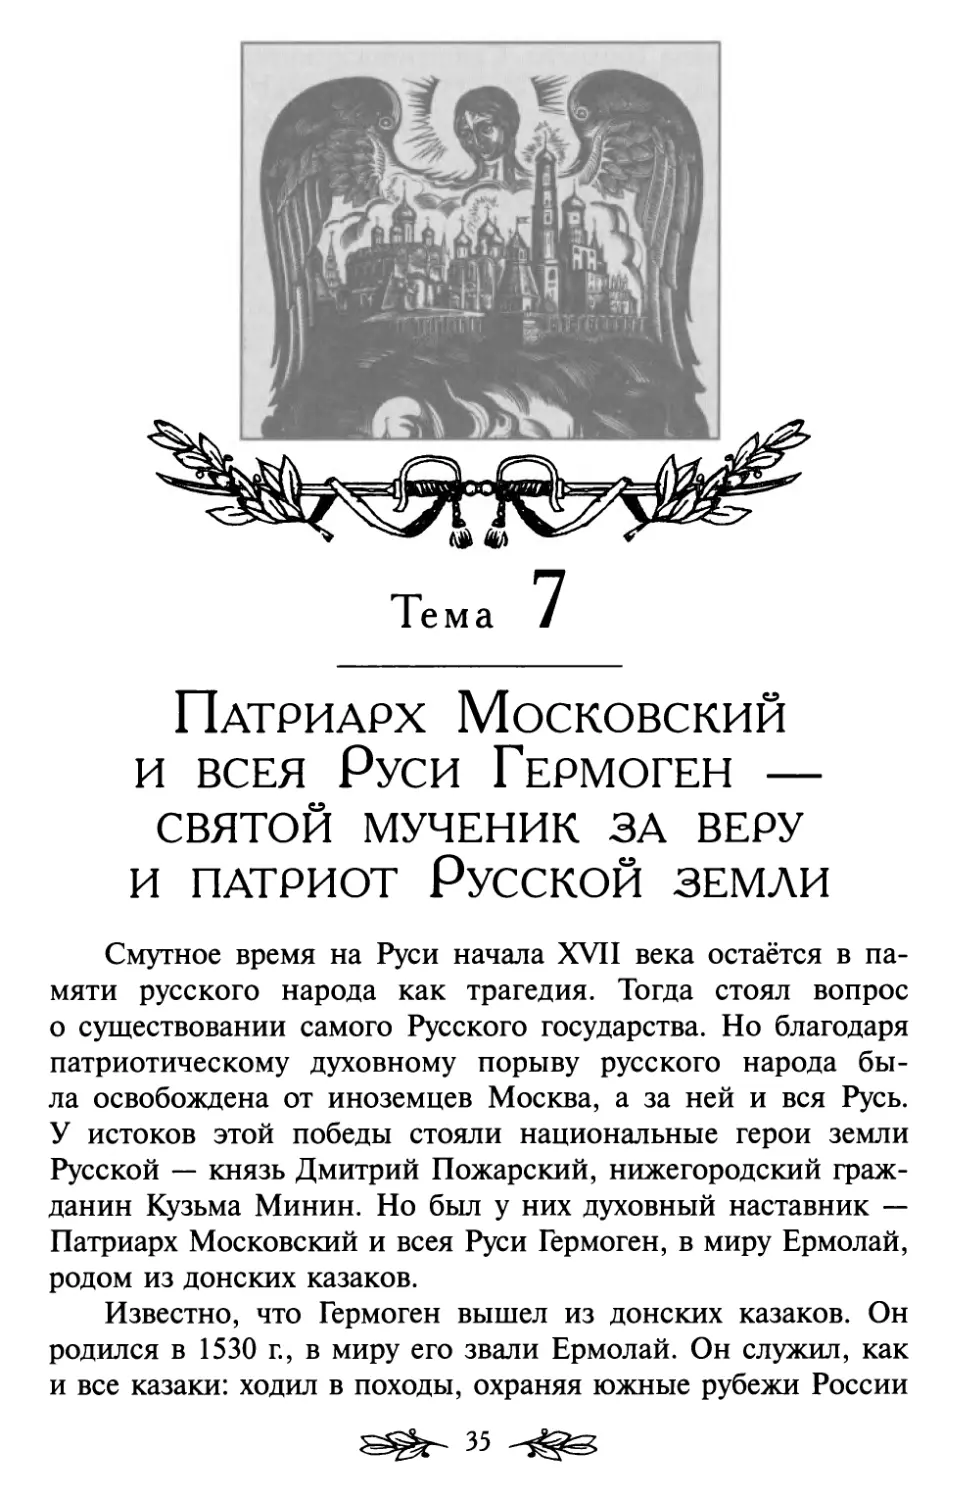 Тема 7. Патриарх Московский и всея Руси Гермоген — святой мученик за веру и патриот Русской земли